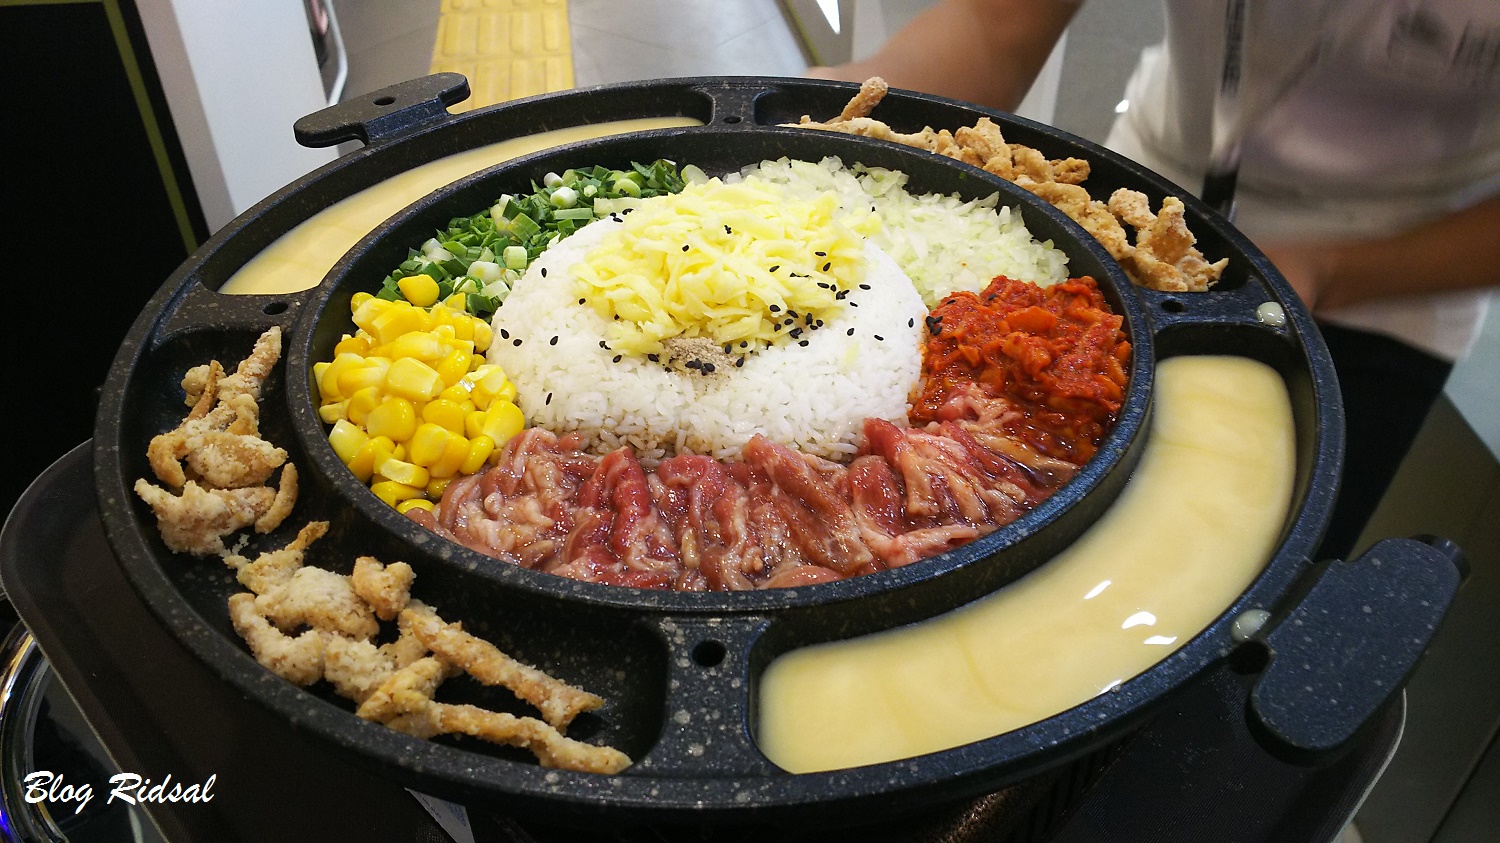 Patbingsoo Korea Dessert House: Menikmati Kuliner Korea di Kota Medan